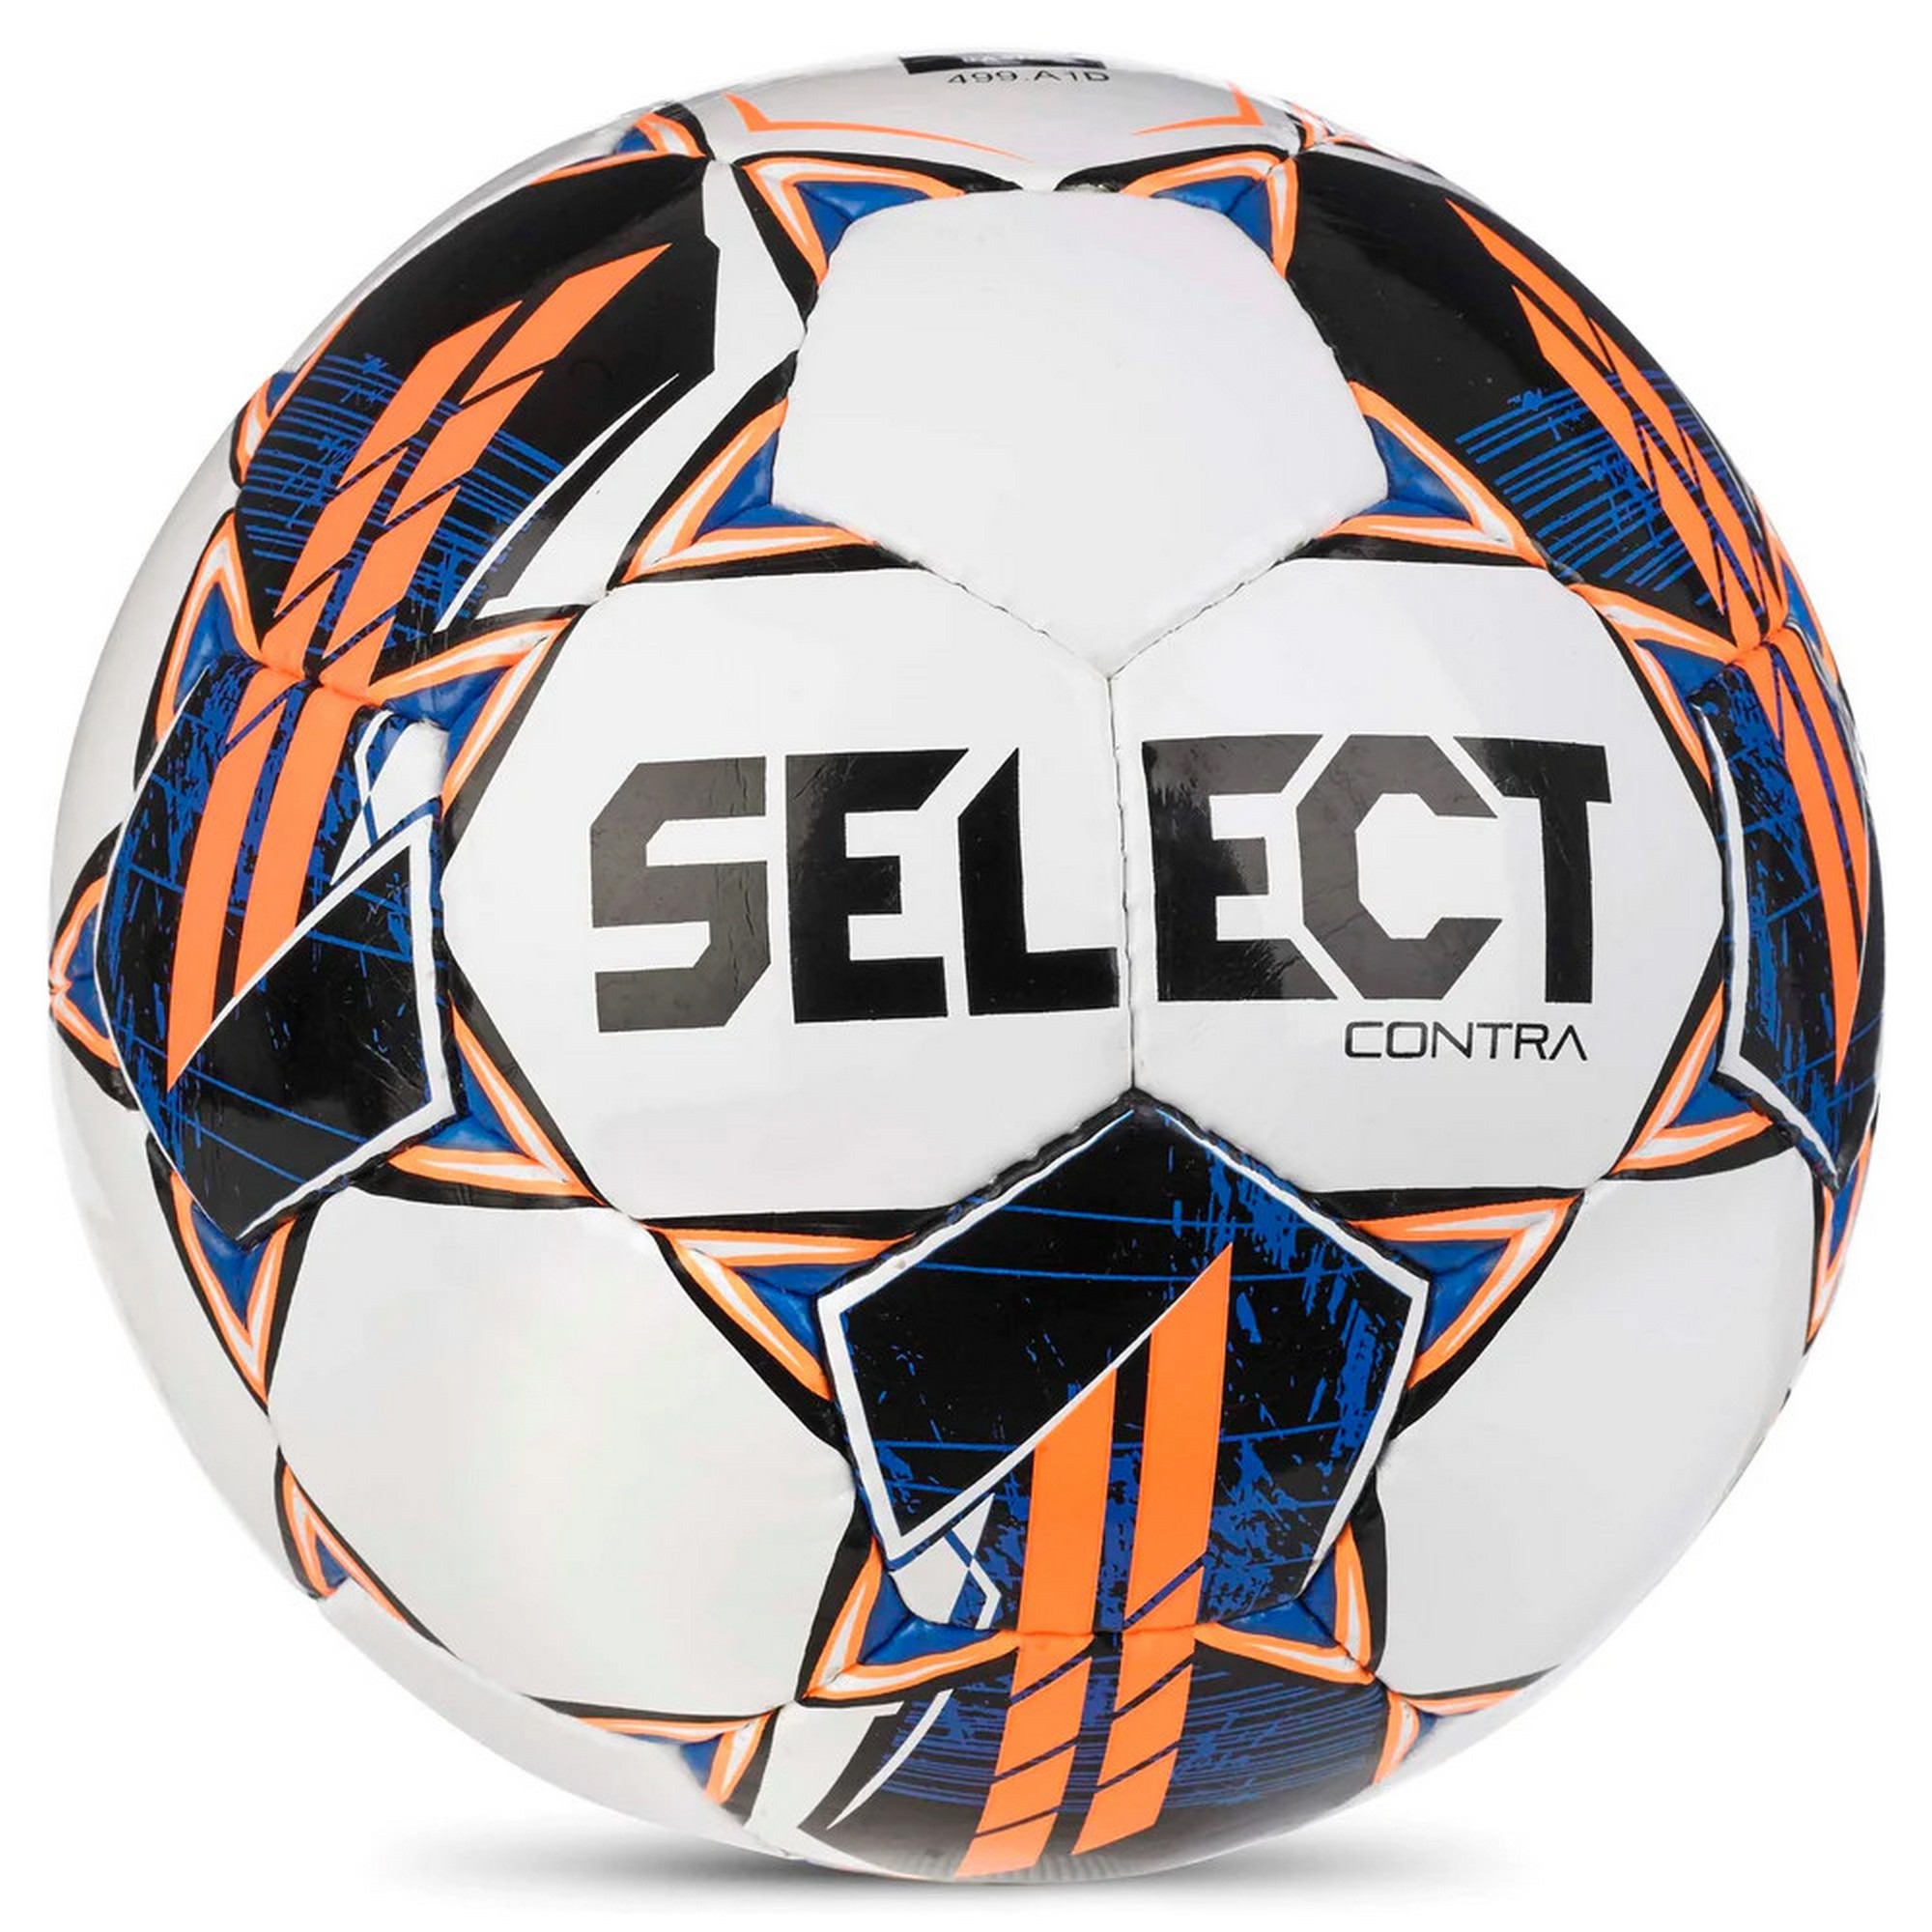 Купить Мяч футбольный Select Contra Basic v23 0854160006 р.4, FIFA Basic,